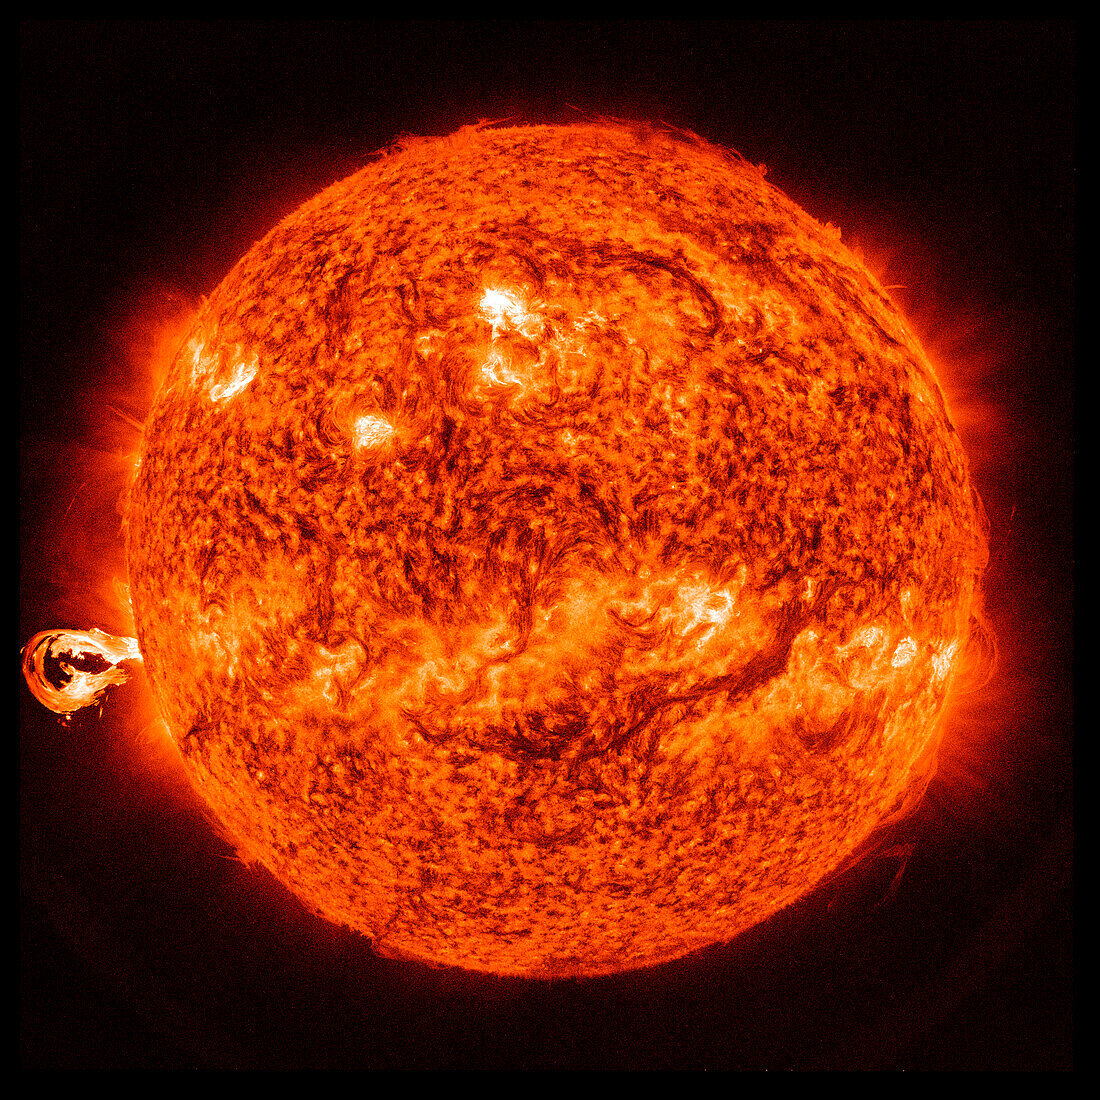 Eruption of solar material, SDO image